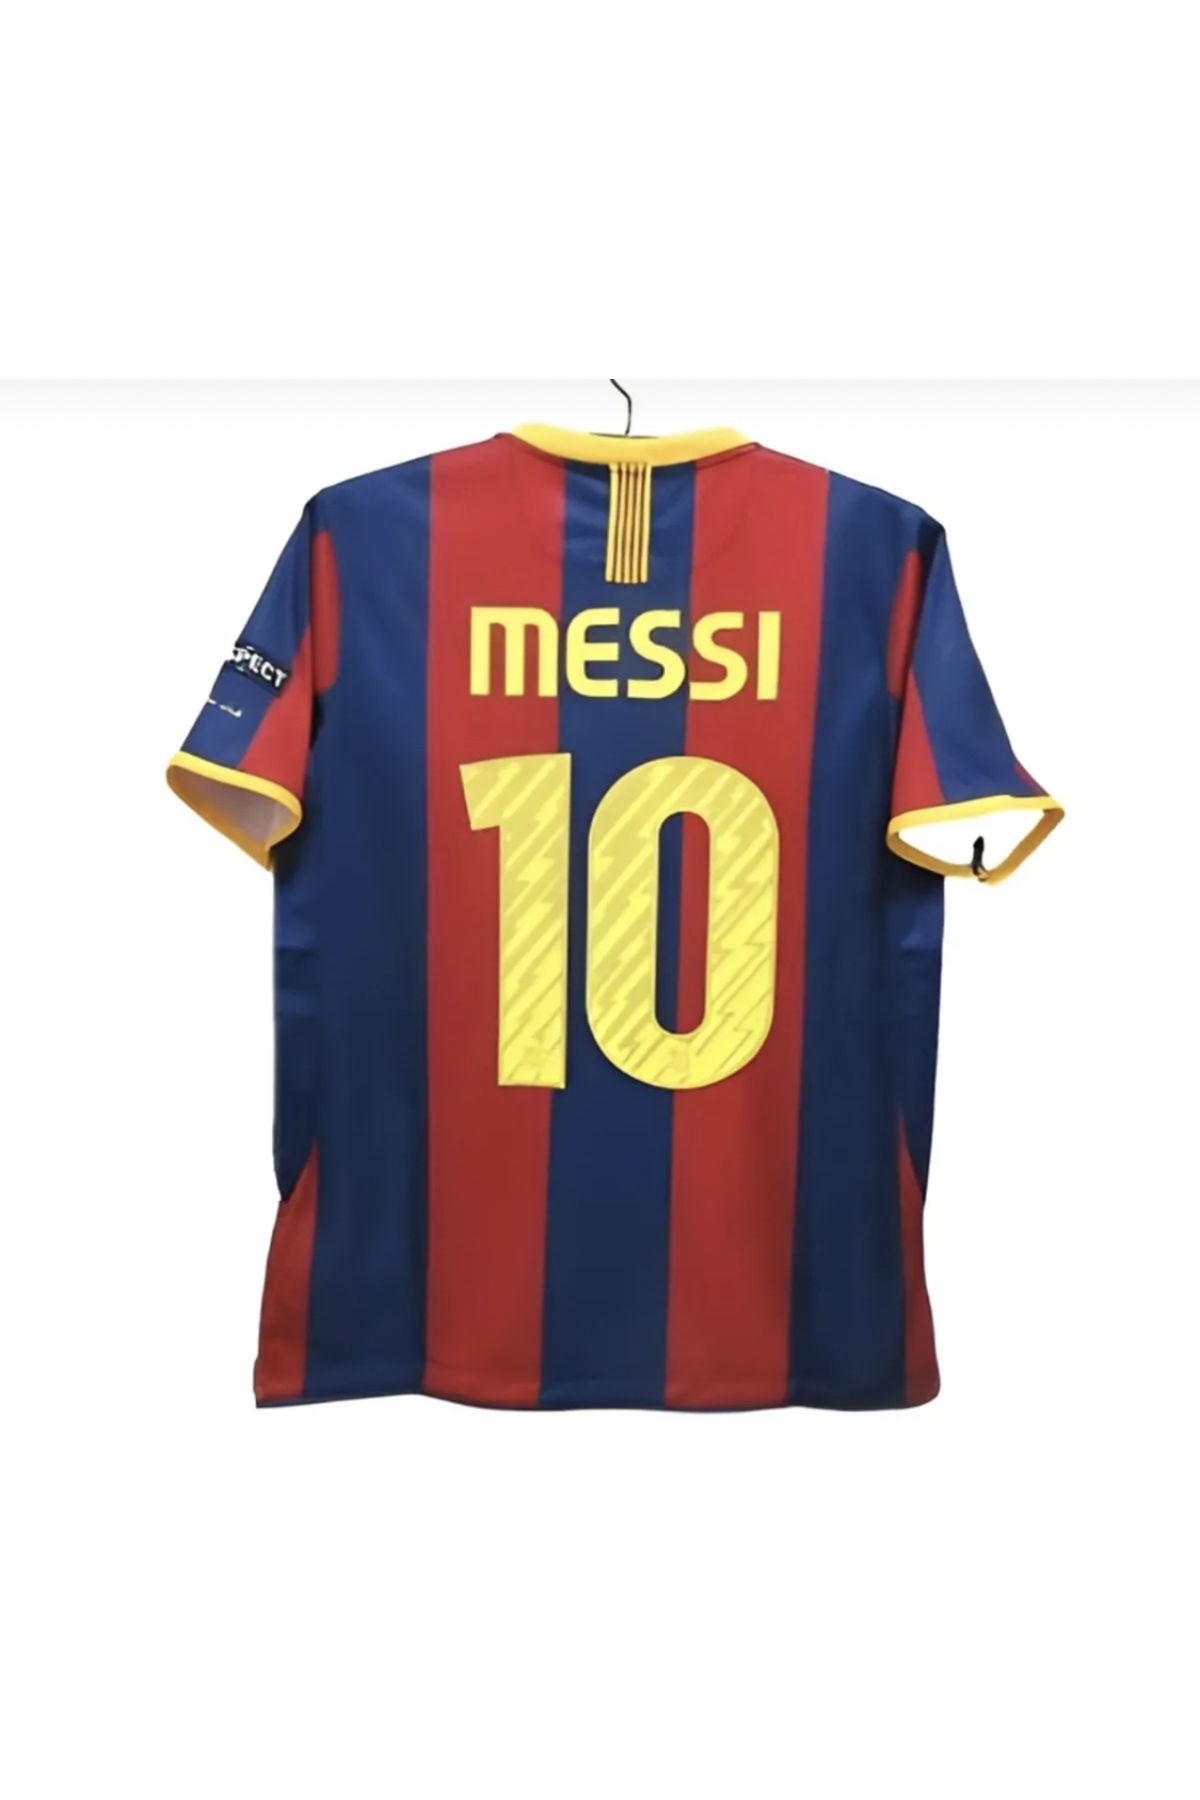 misafir Barcelona Messi efsane forma mb84